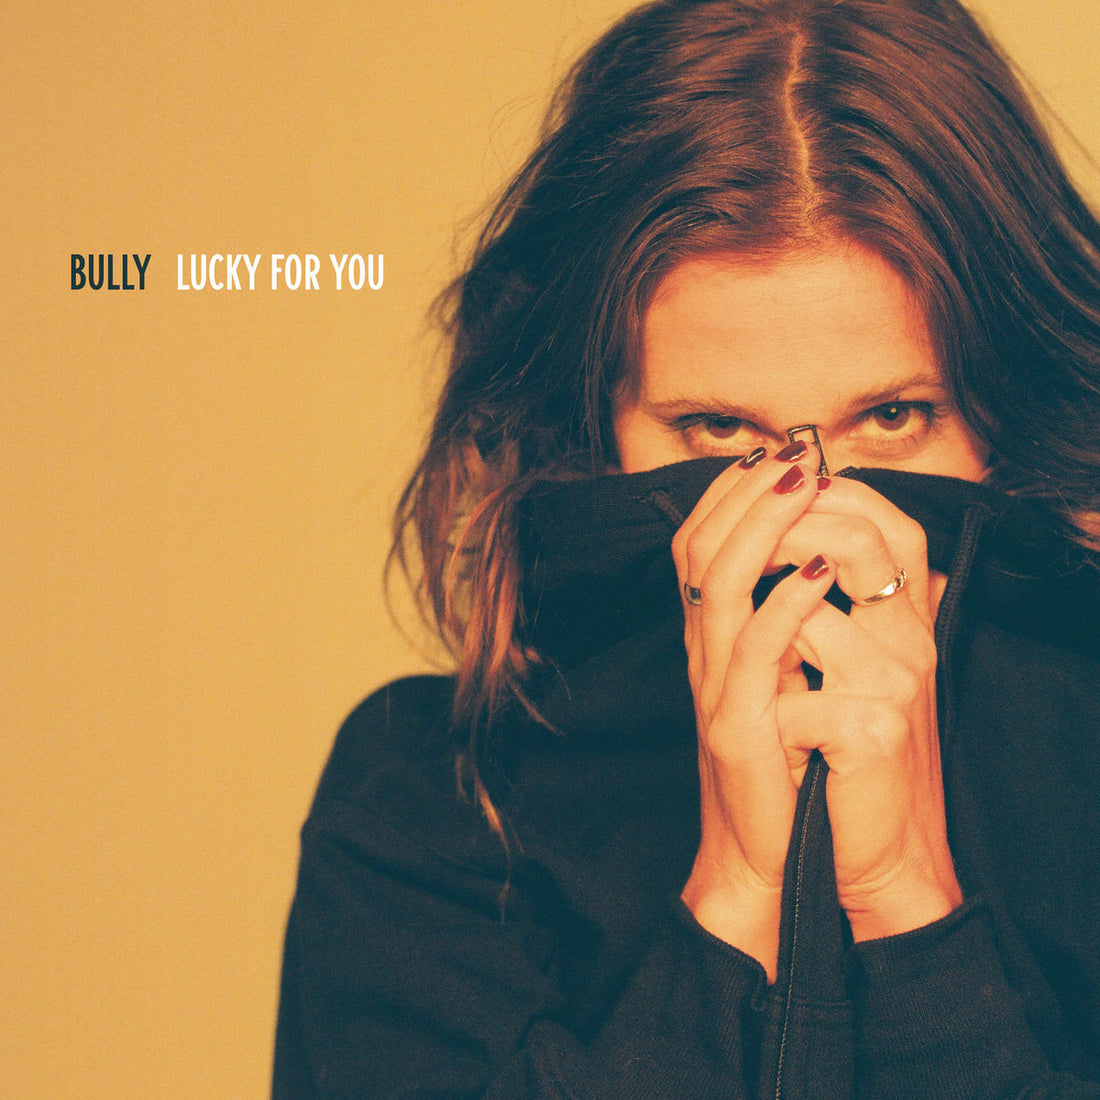 New Bully LP Announced!